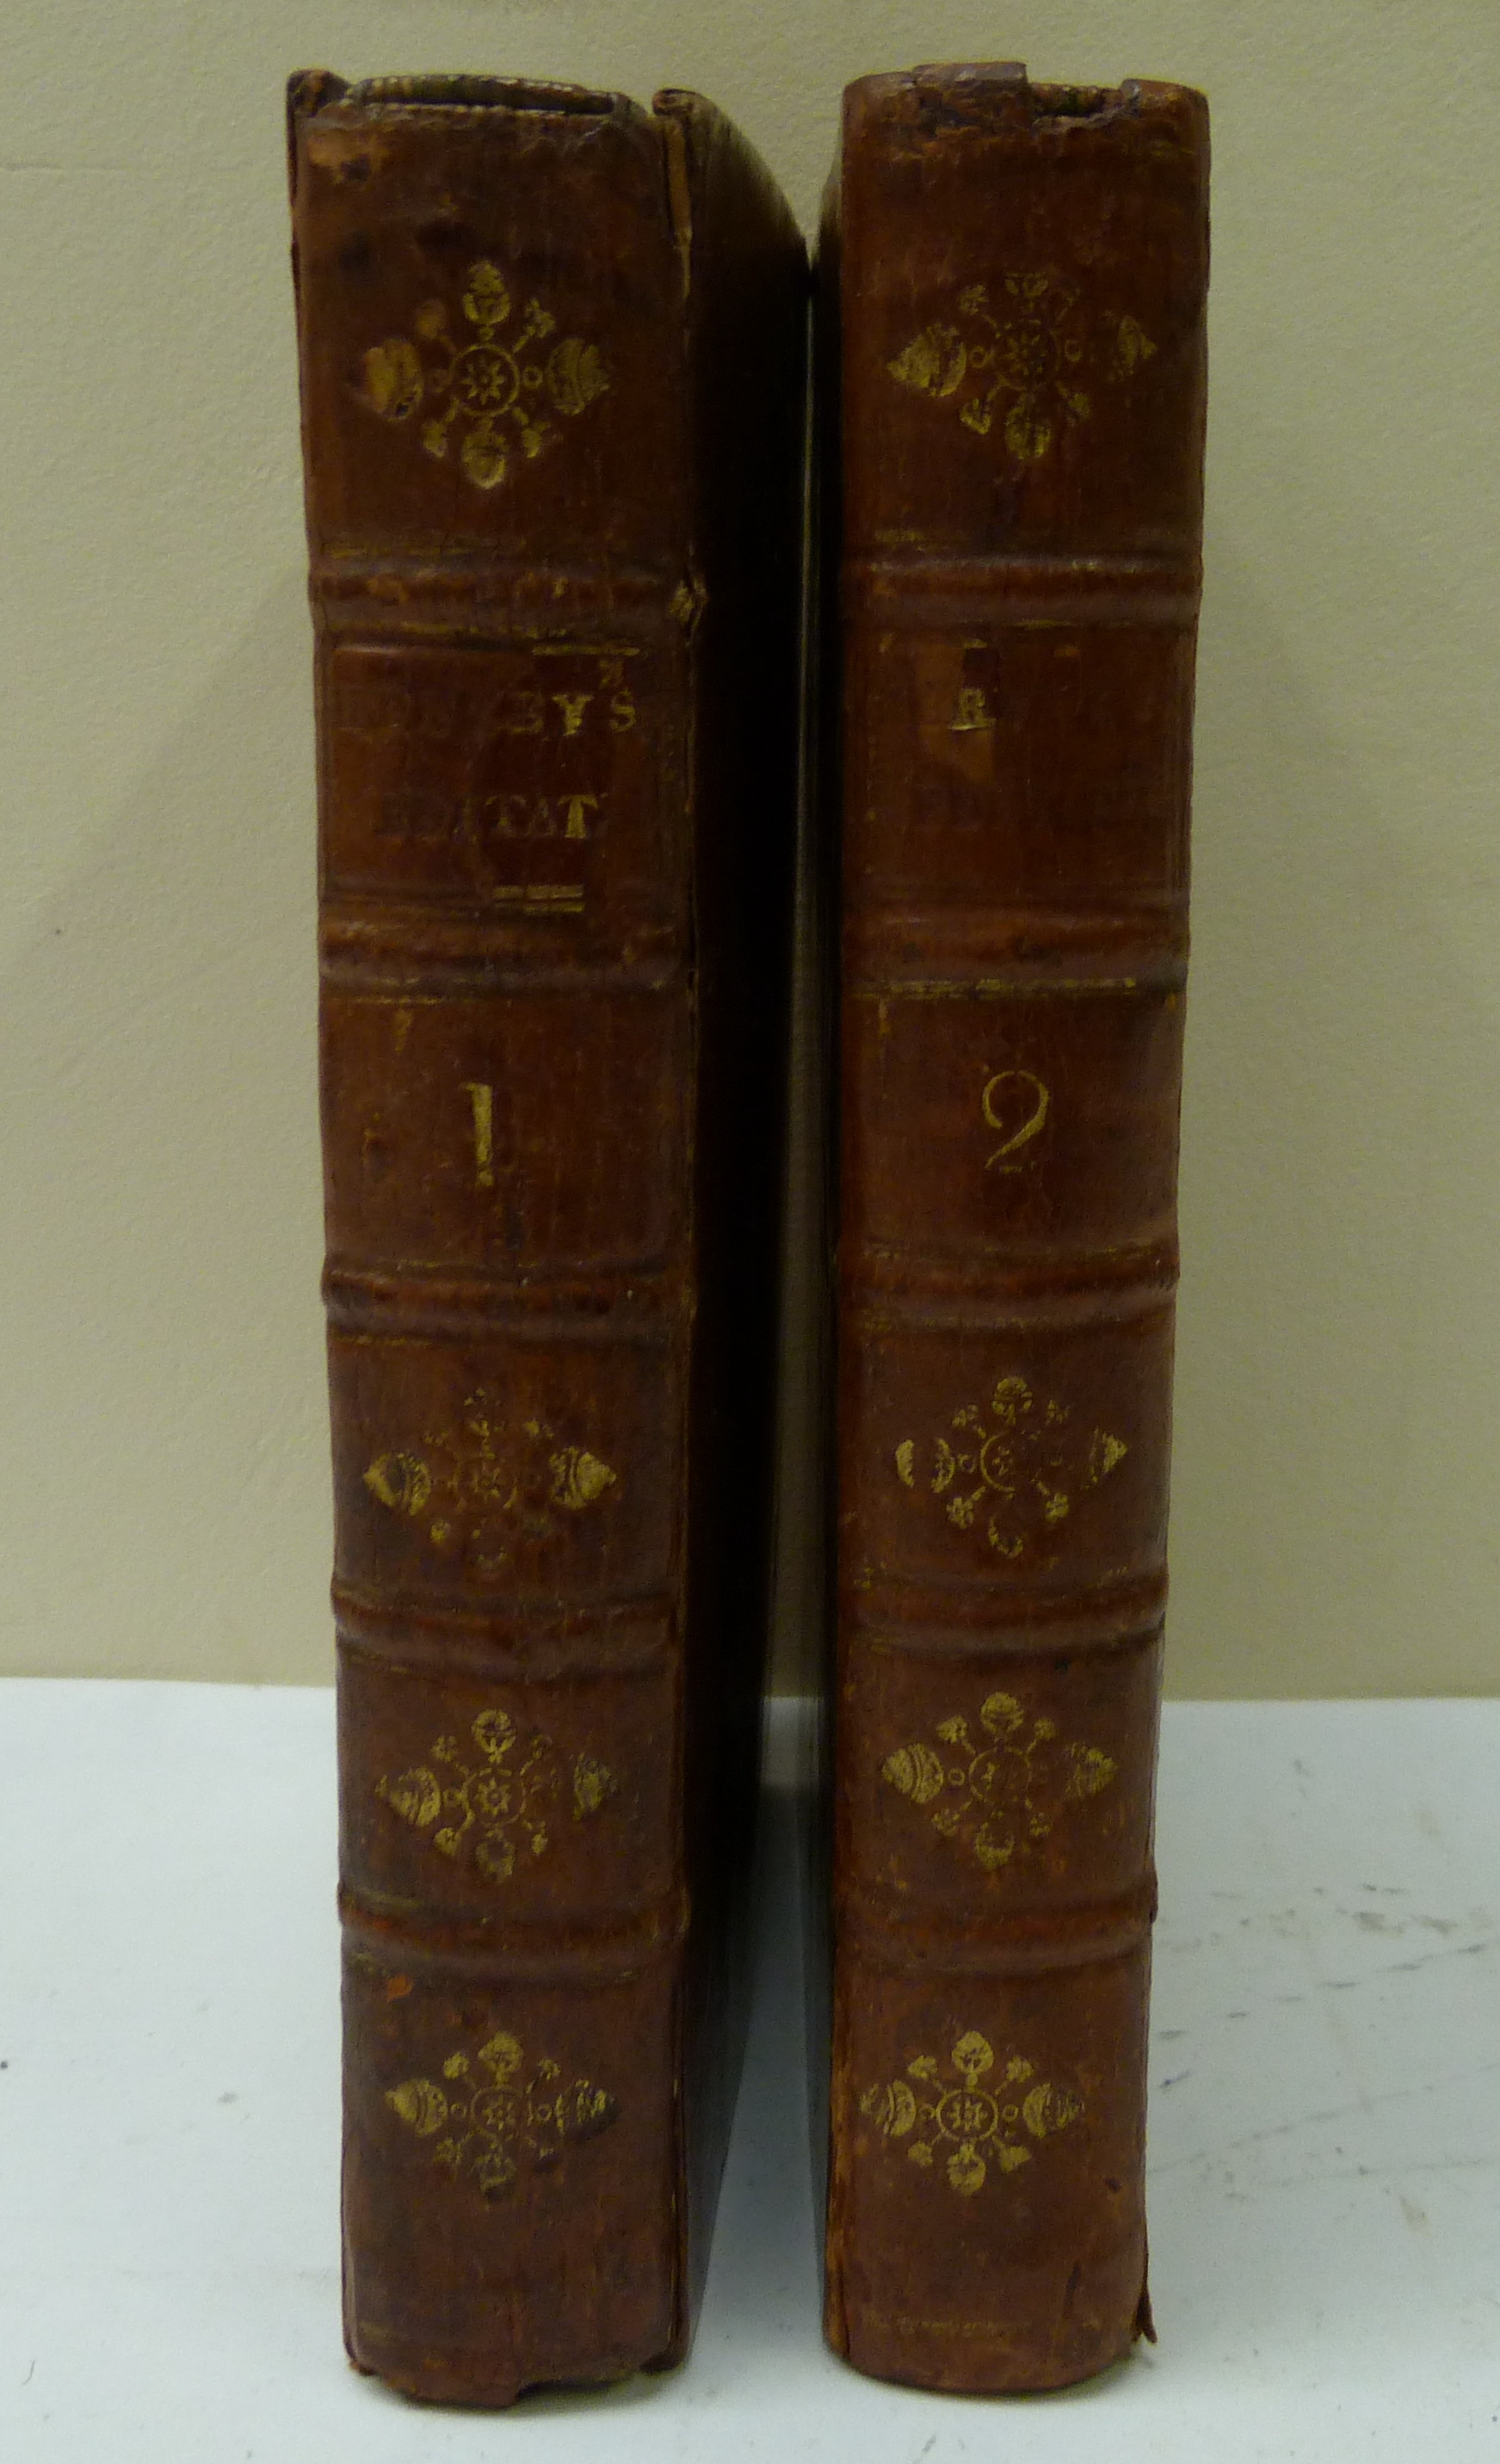 HERVEY JAMES.  Meditations & Contemplations. 2 vols. 2 eng. frontis. Calf. 1760.